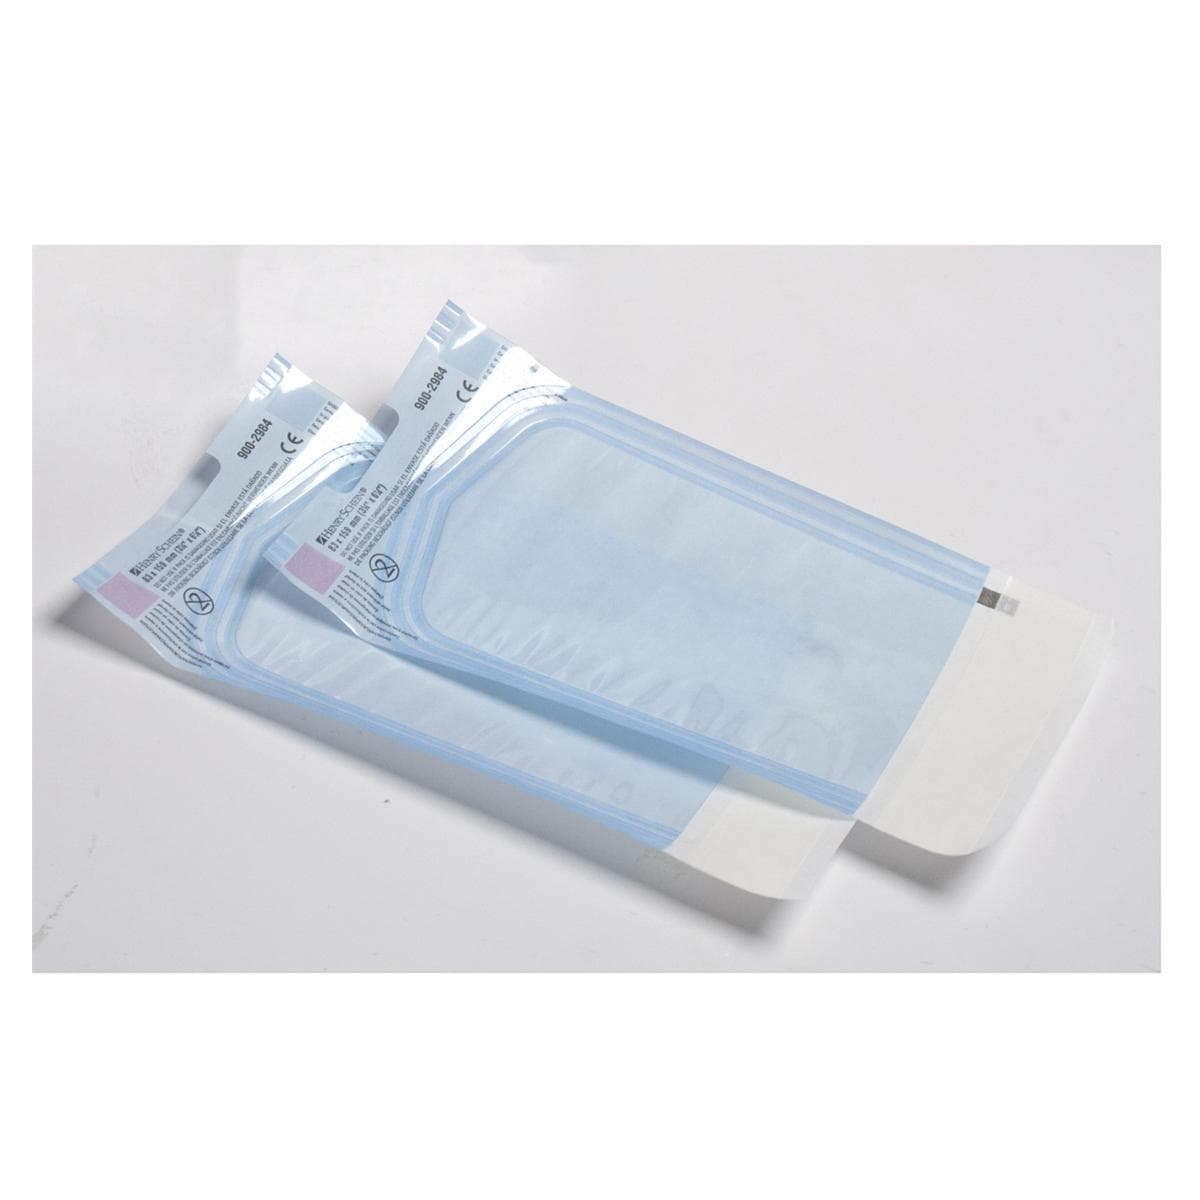 Sterilisatiezakjes selfseal - 13 x 36cm, per 200 stuks - Geschikt voor IUD instrumentenset (excl. metalen uterussonde)